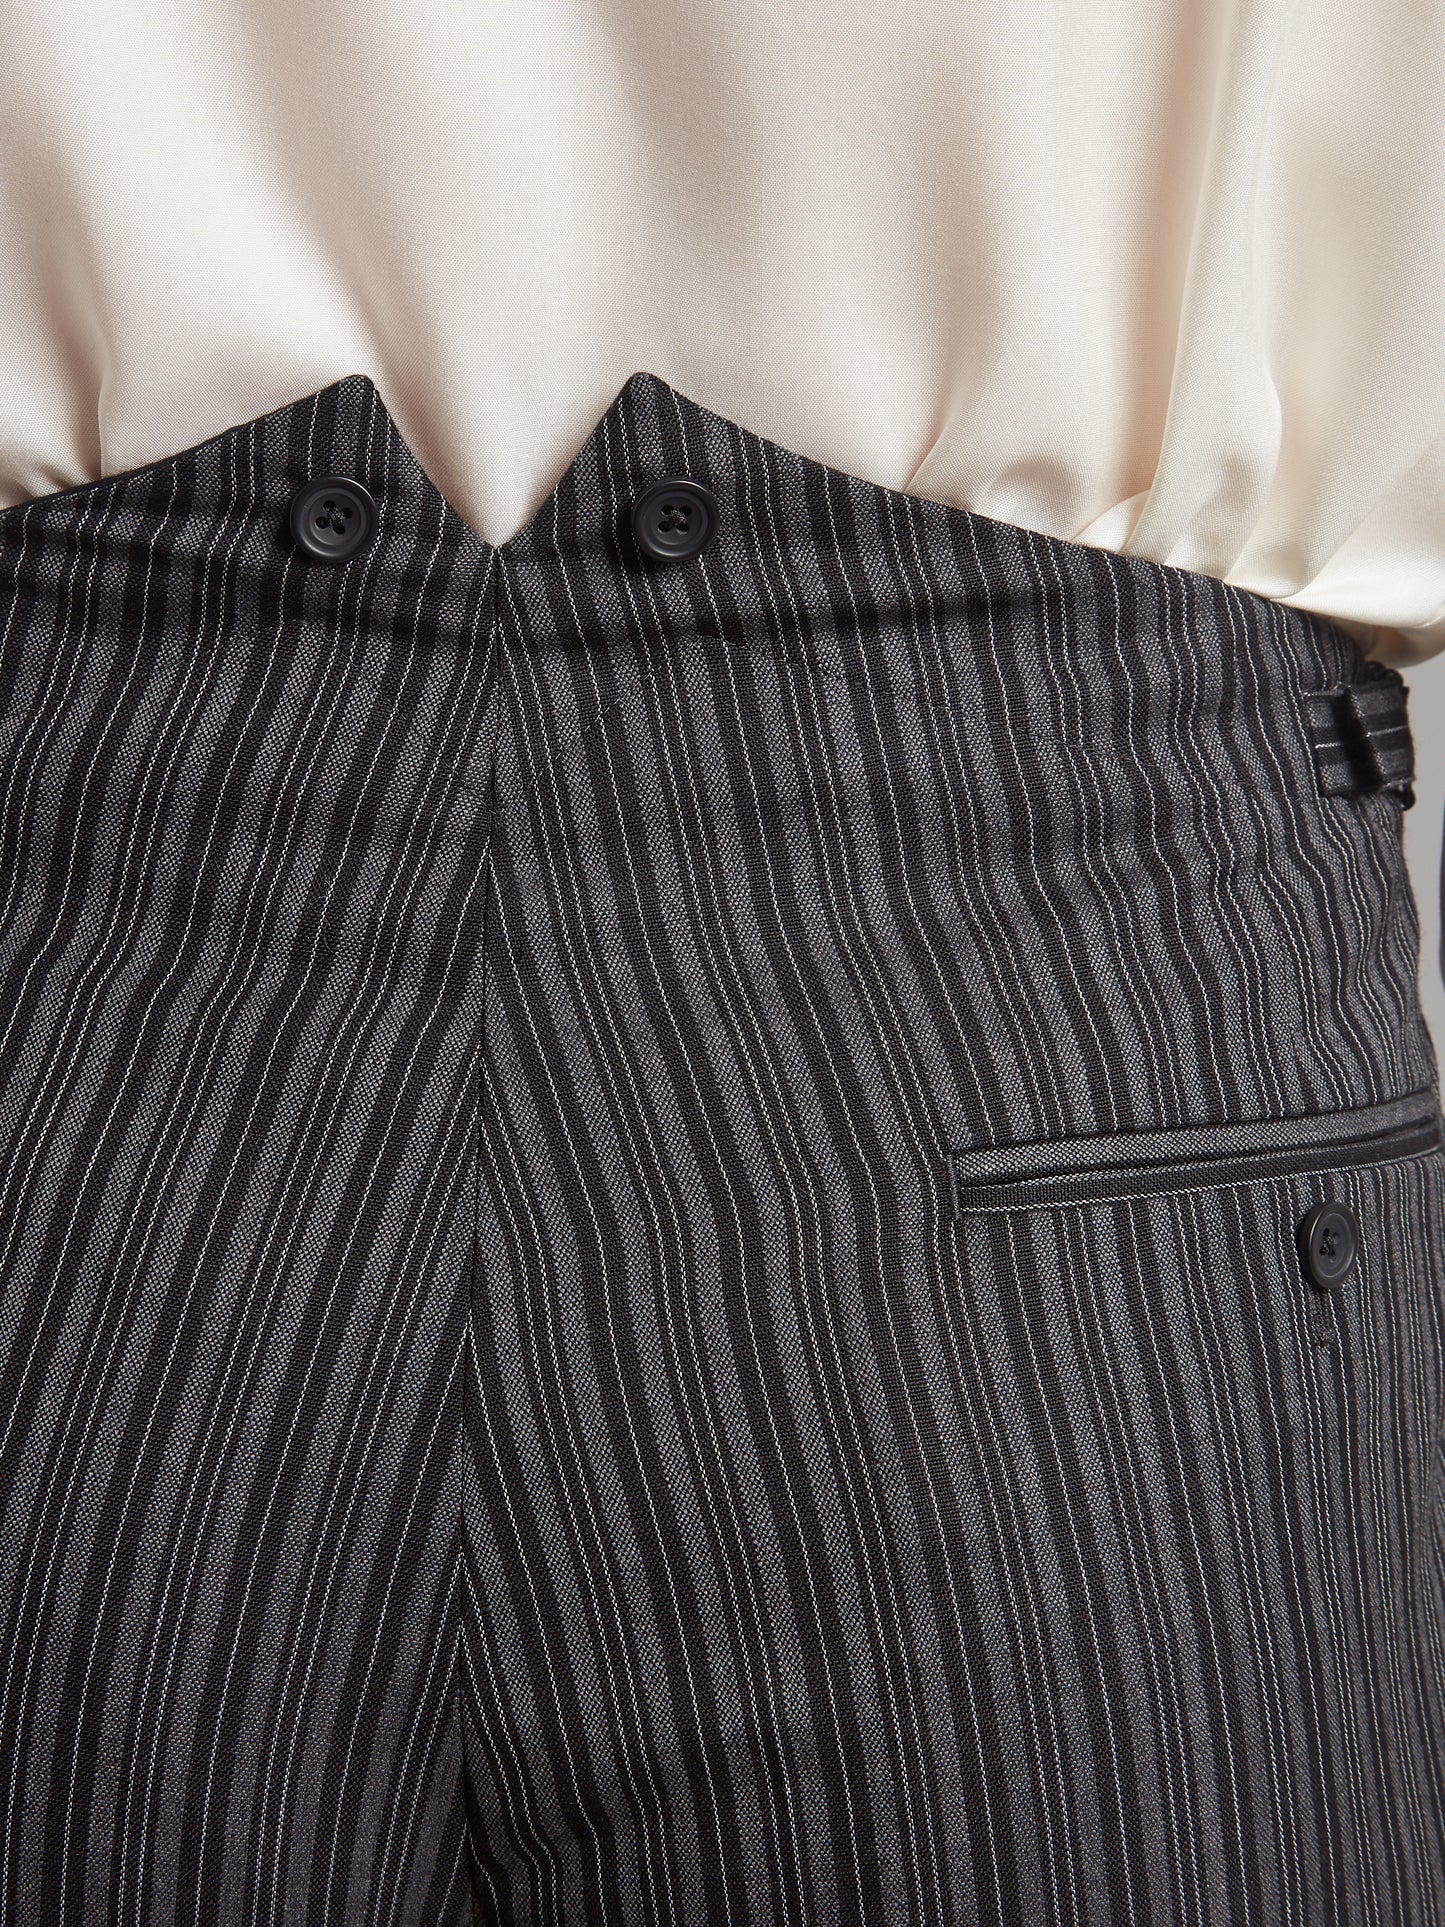 Fishtail Back Morning Trousers - Classic Stripe